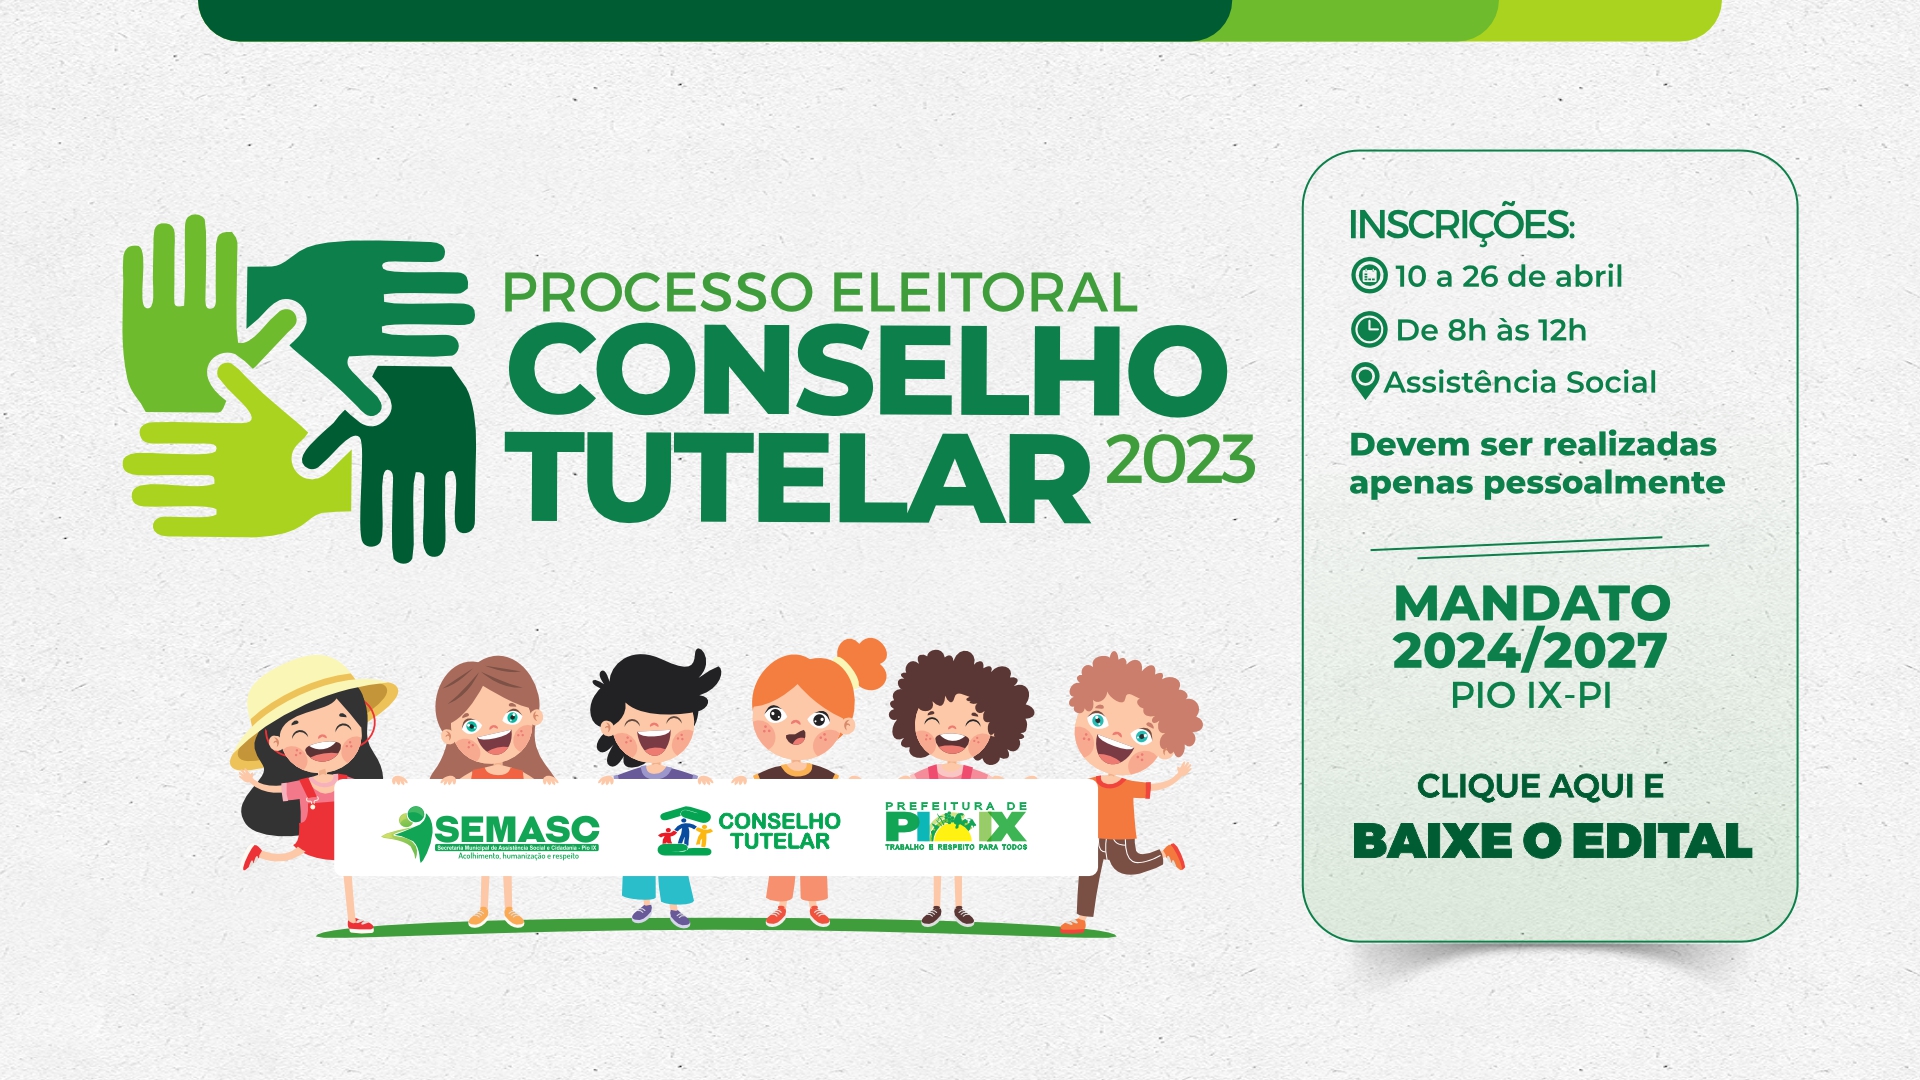  PROCESSO ELEITORAL CONSELHO TUTELAR 2023